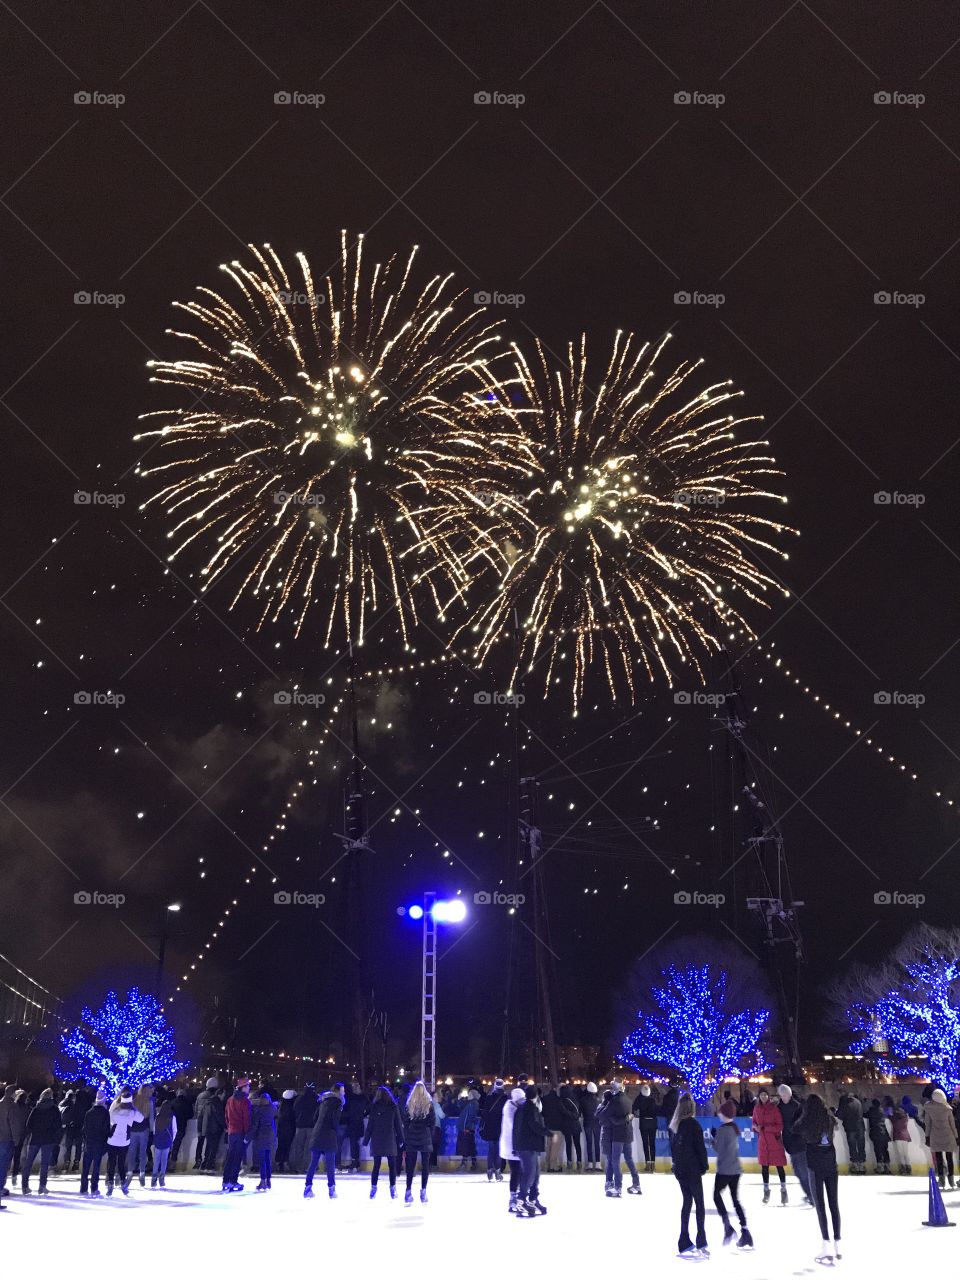 New Year’s Eve fireworks at Ice skate rink winter fest, Philadelphia 